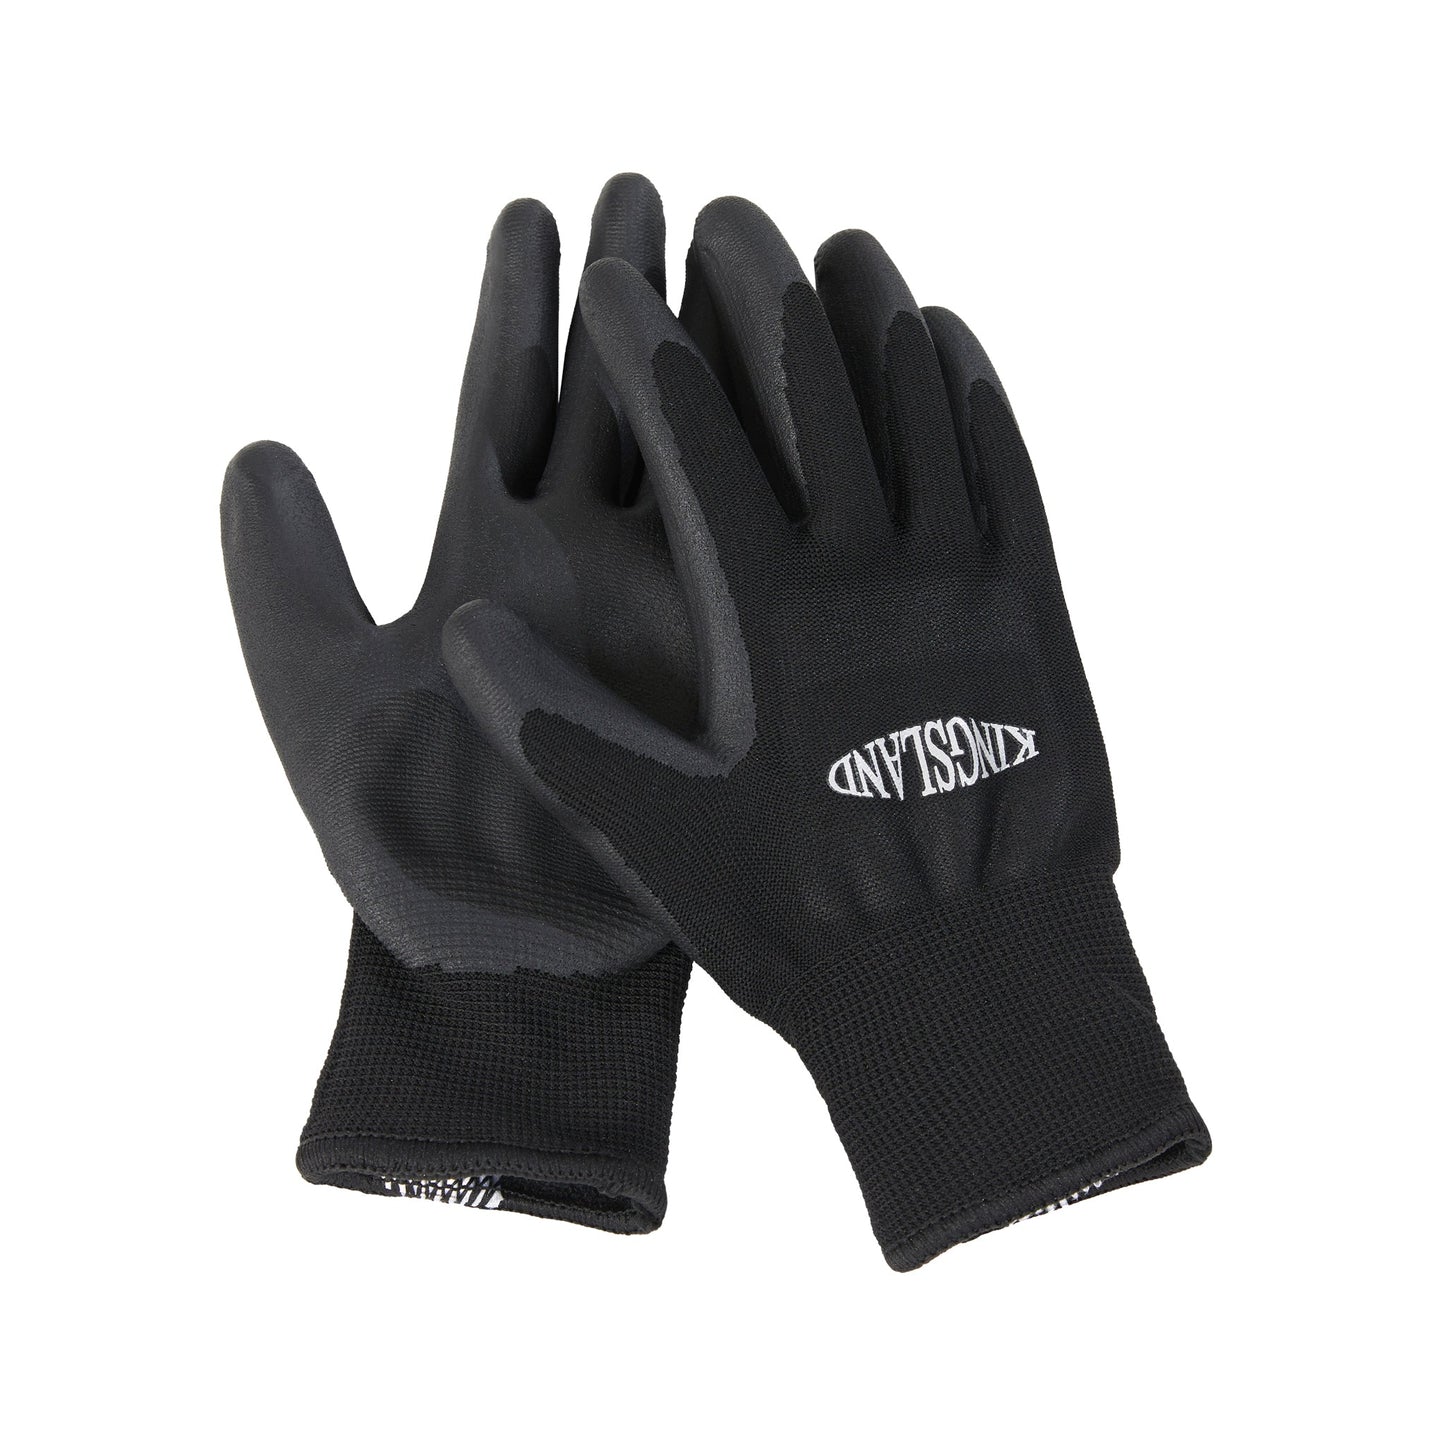 KLRayden Unisex Working Gloves